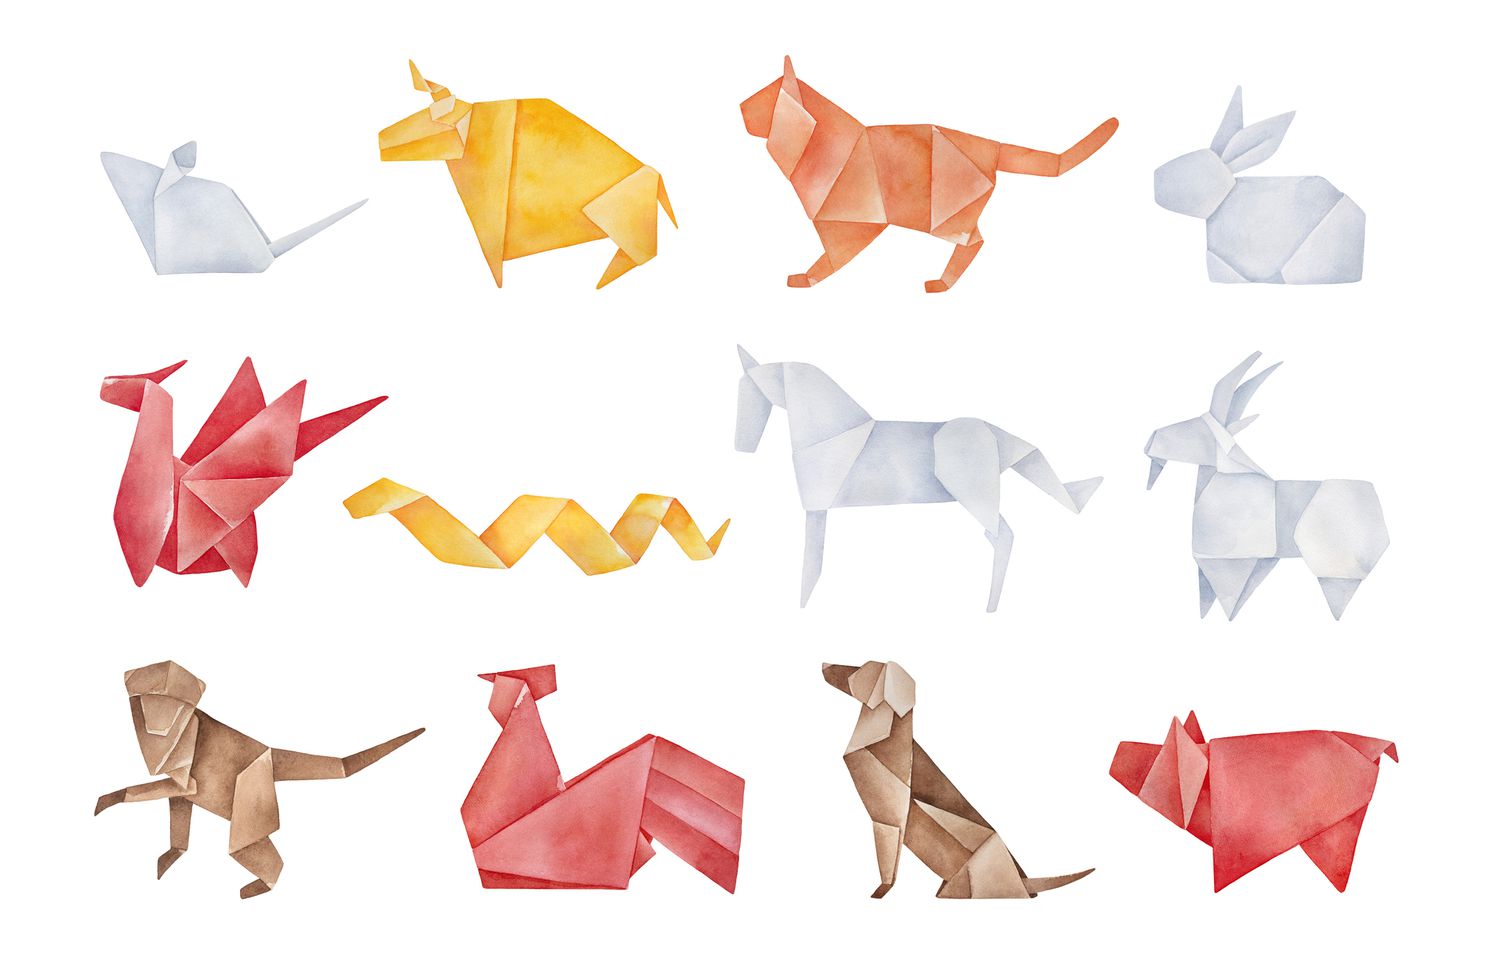 Paquet d'origami plié de douze animaux traditionnels du zodiaque chinois. Couleurs rouge, jaune, marron, orange, gris clair. Dessin graphique aquarelle à la main